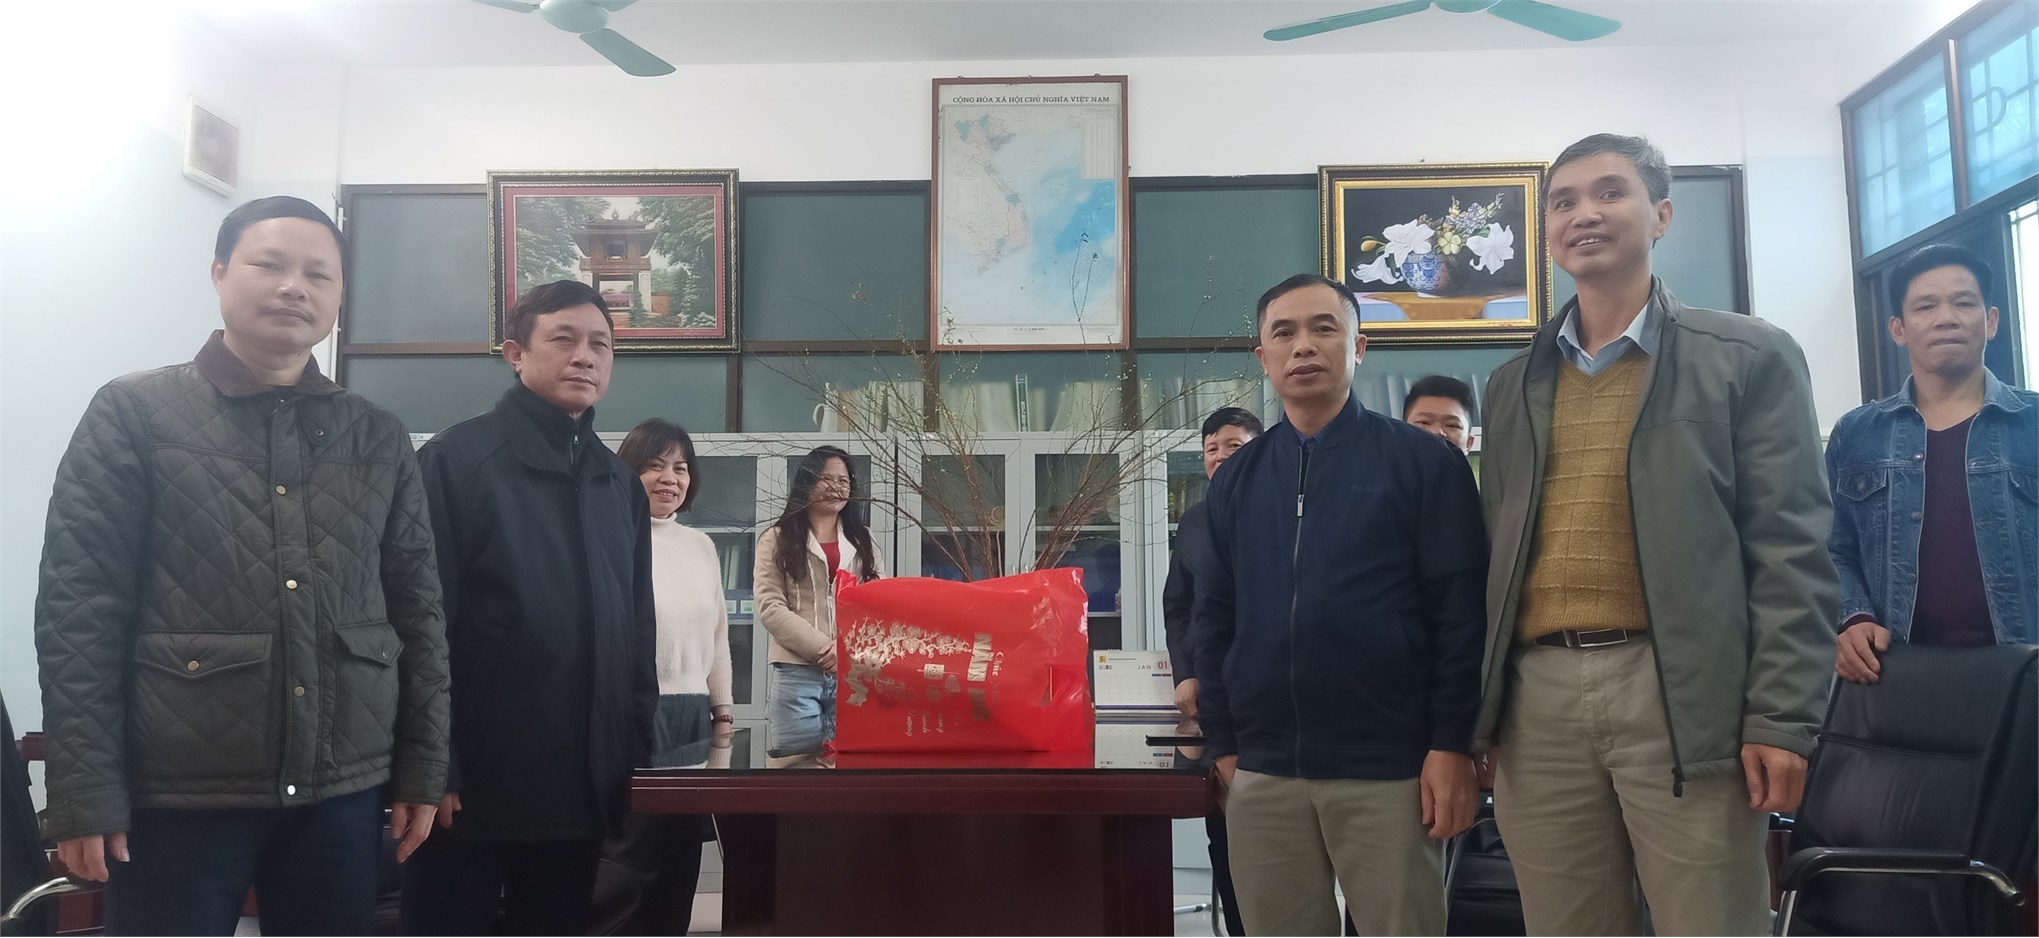 Trung tâm Việt Nhật tổ chức gặp mặt giáo viên nghỉ hưu theo chế độ